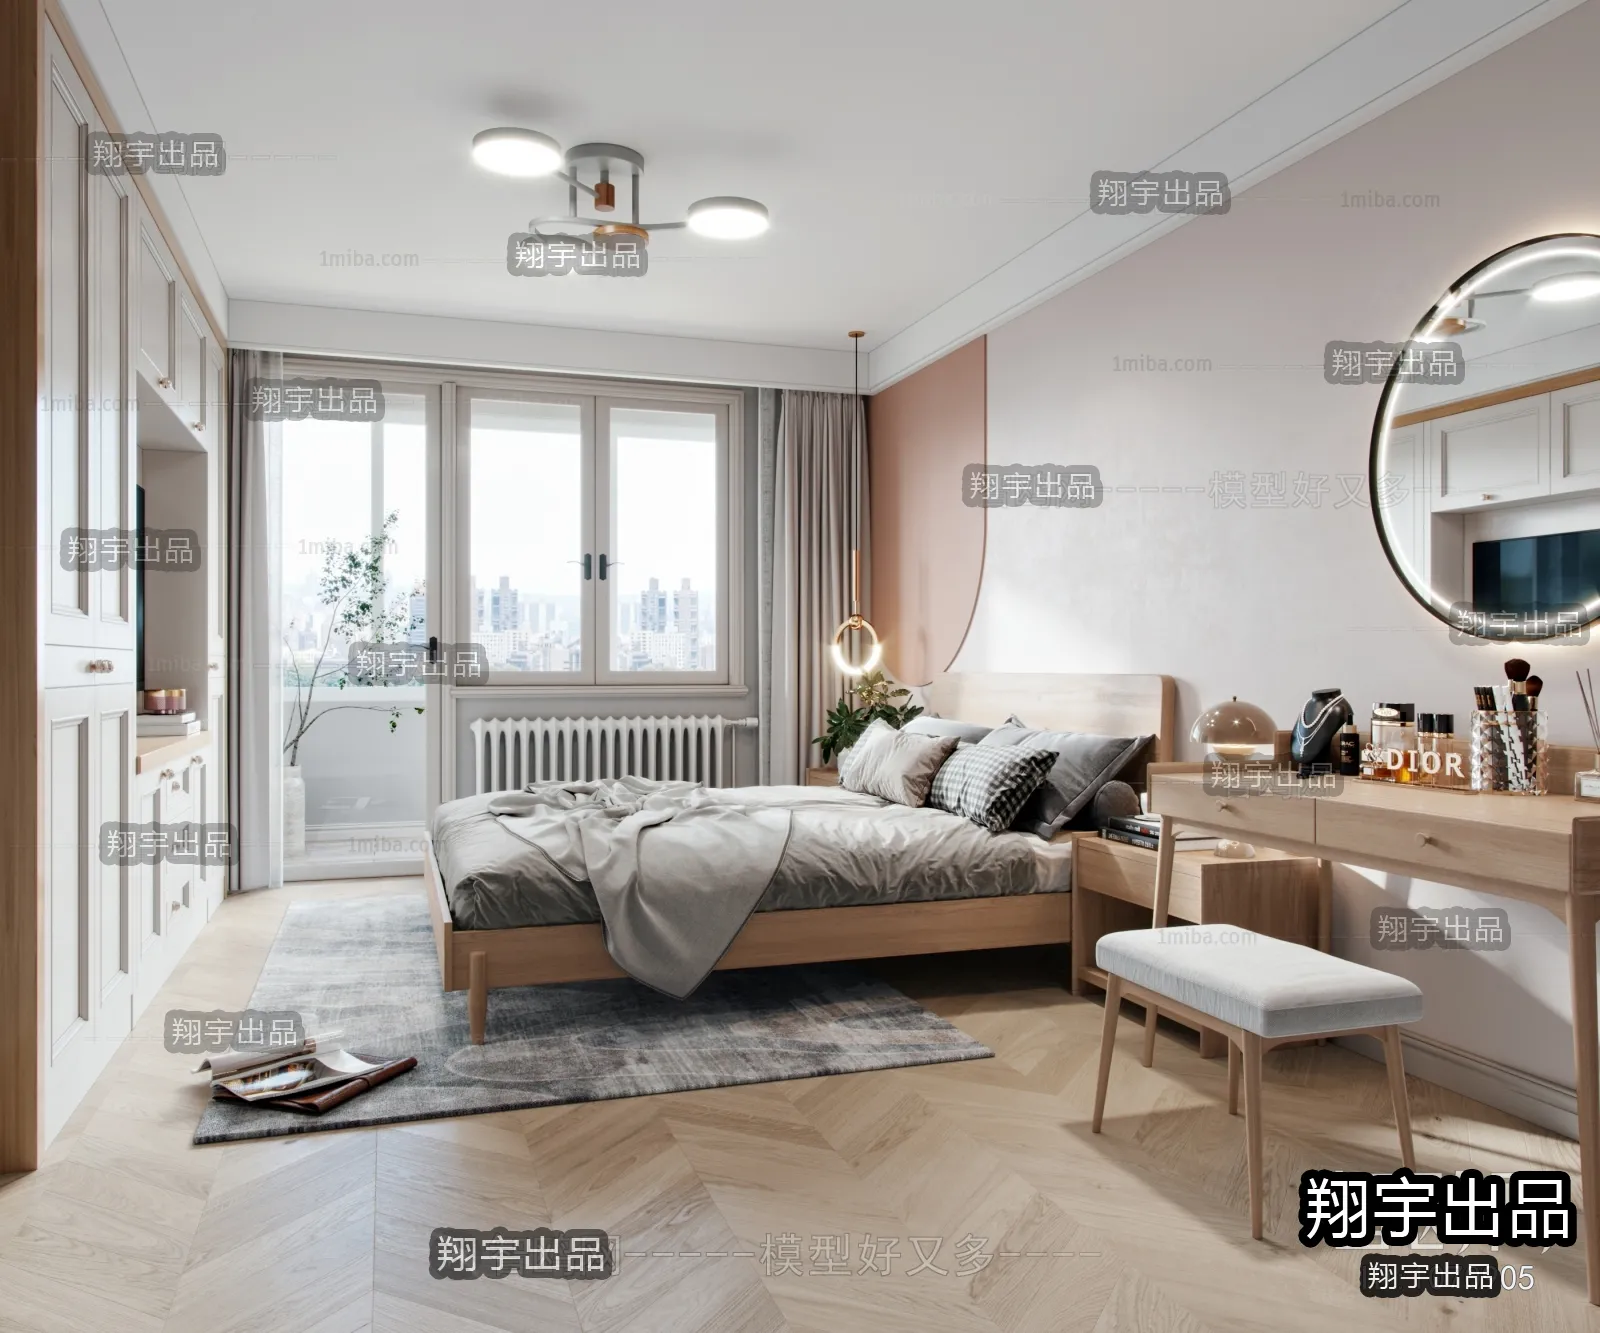 Bedroom – Scandinavian architecture – 001